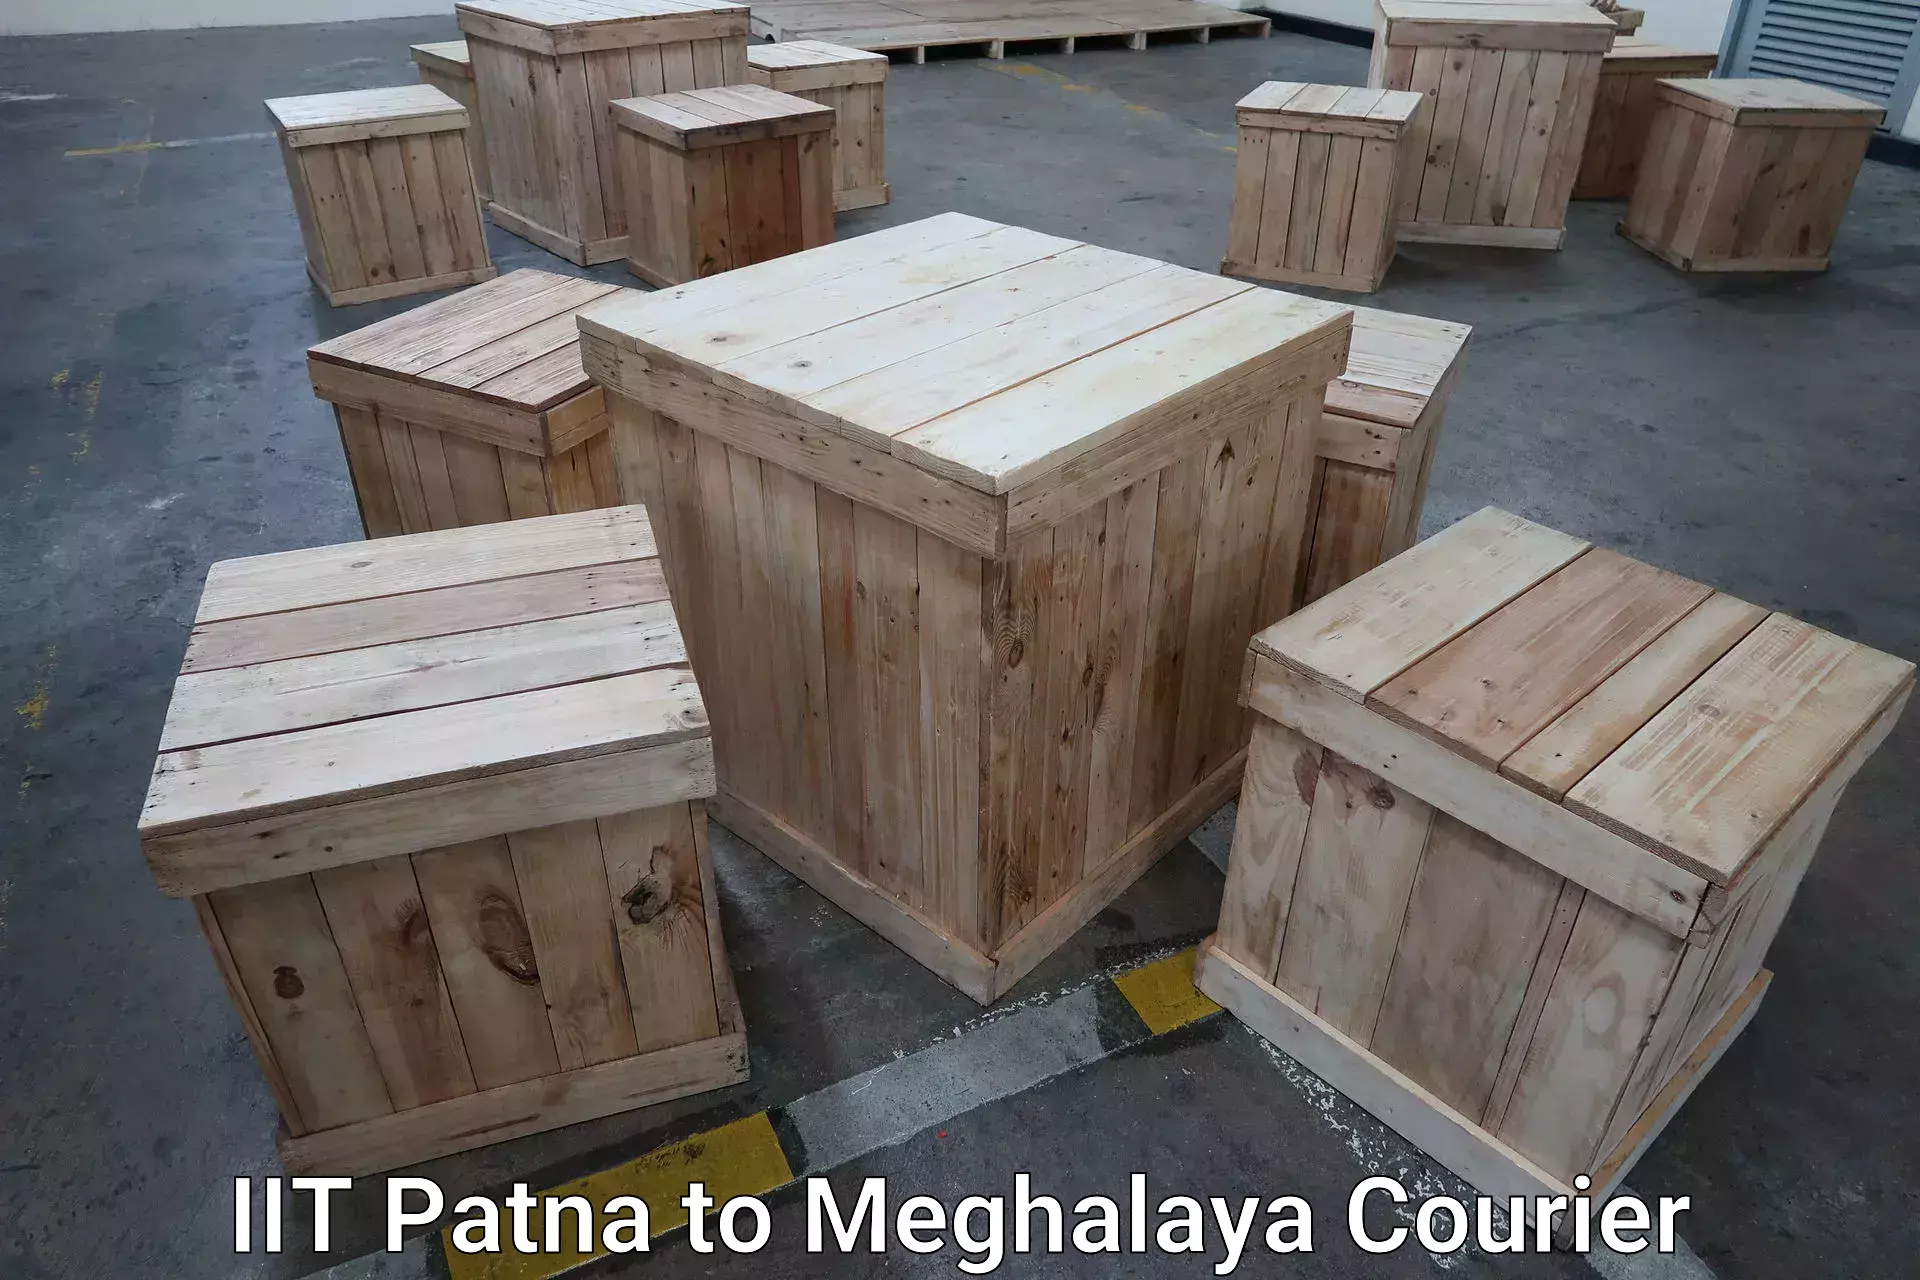 Luggage delivery news IIT Patna to Meghalaya